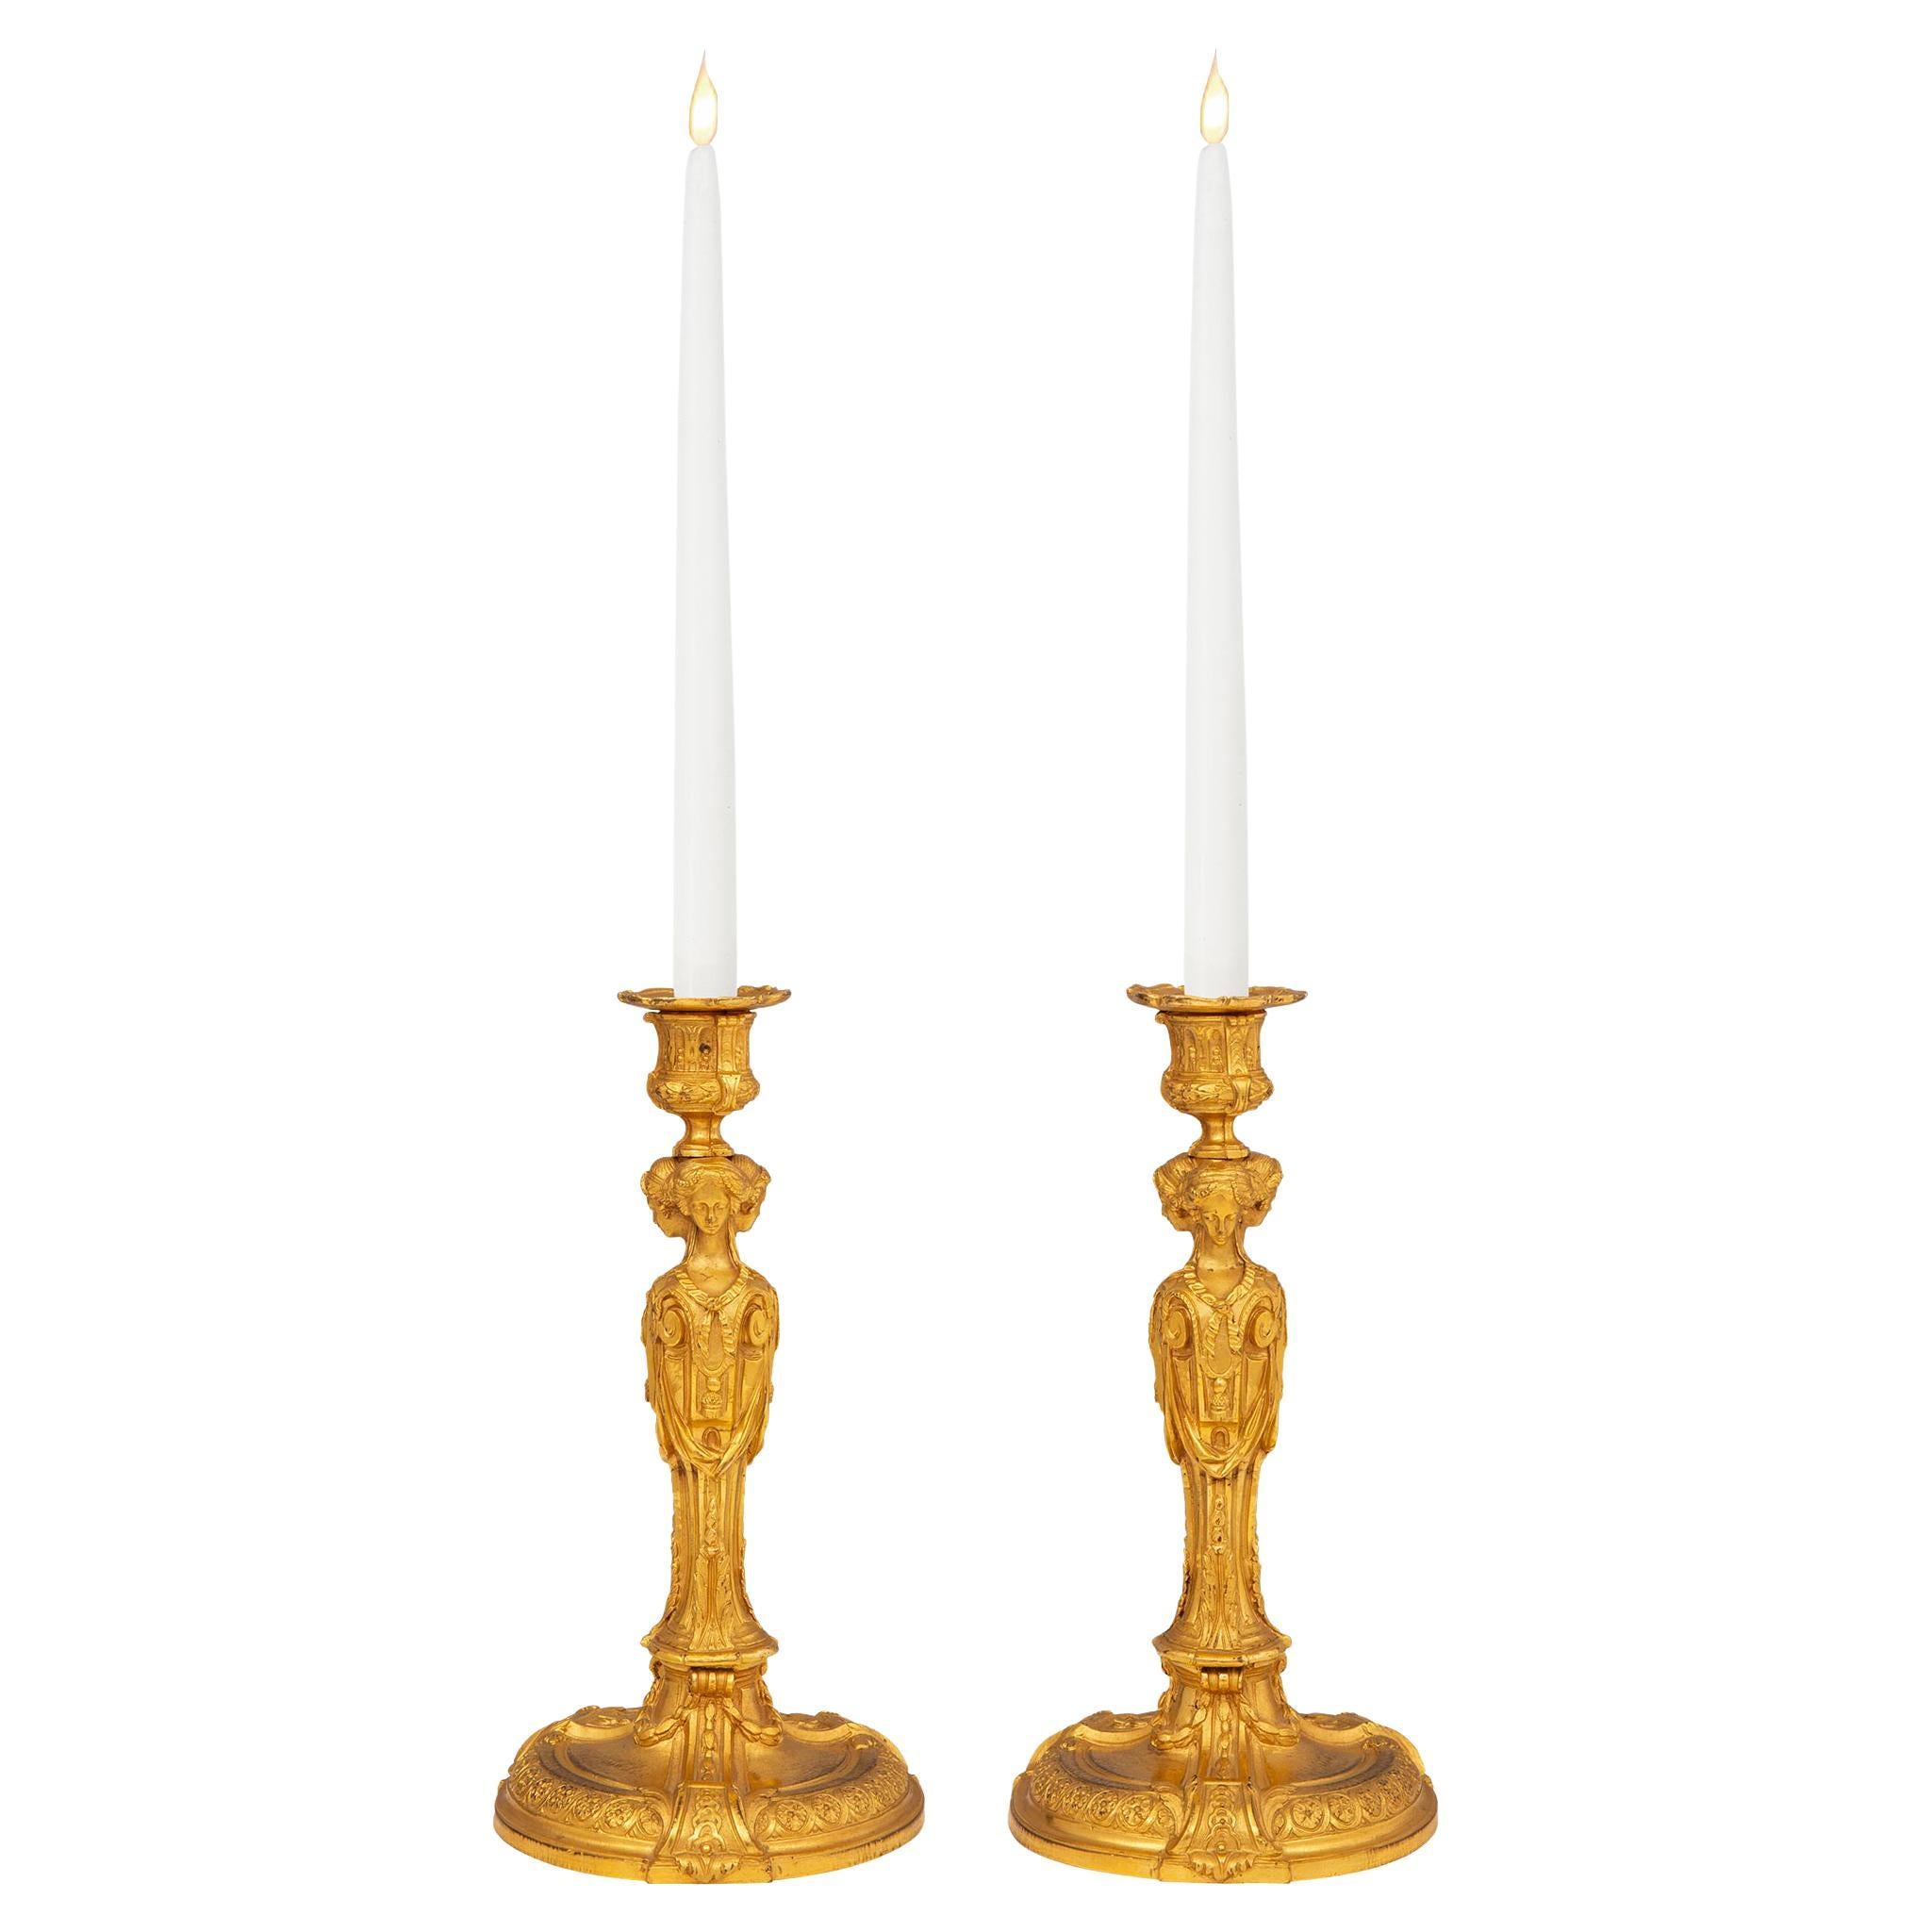 Paar Goldbronze-Kerzenleuchter im Louis-XVI-Stil des frühen 19. Jahrhunderts